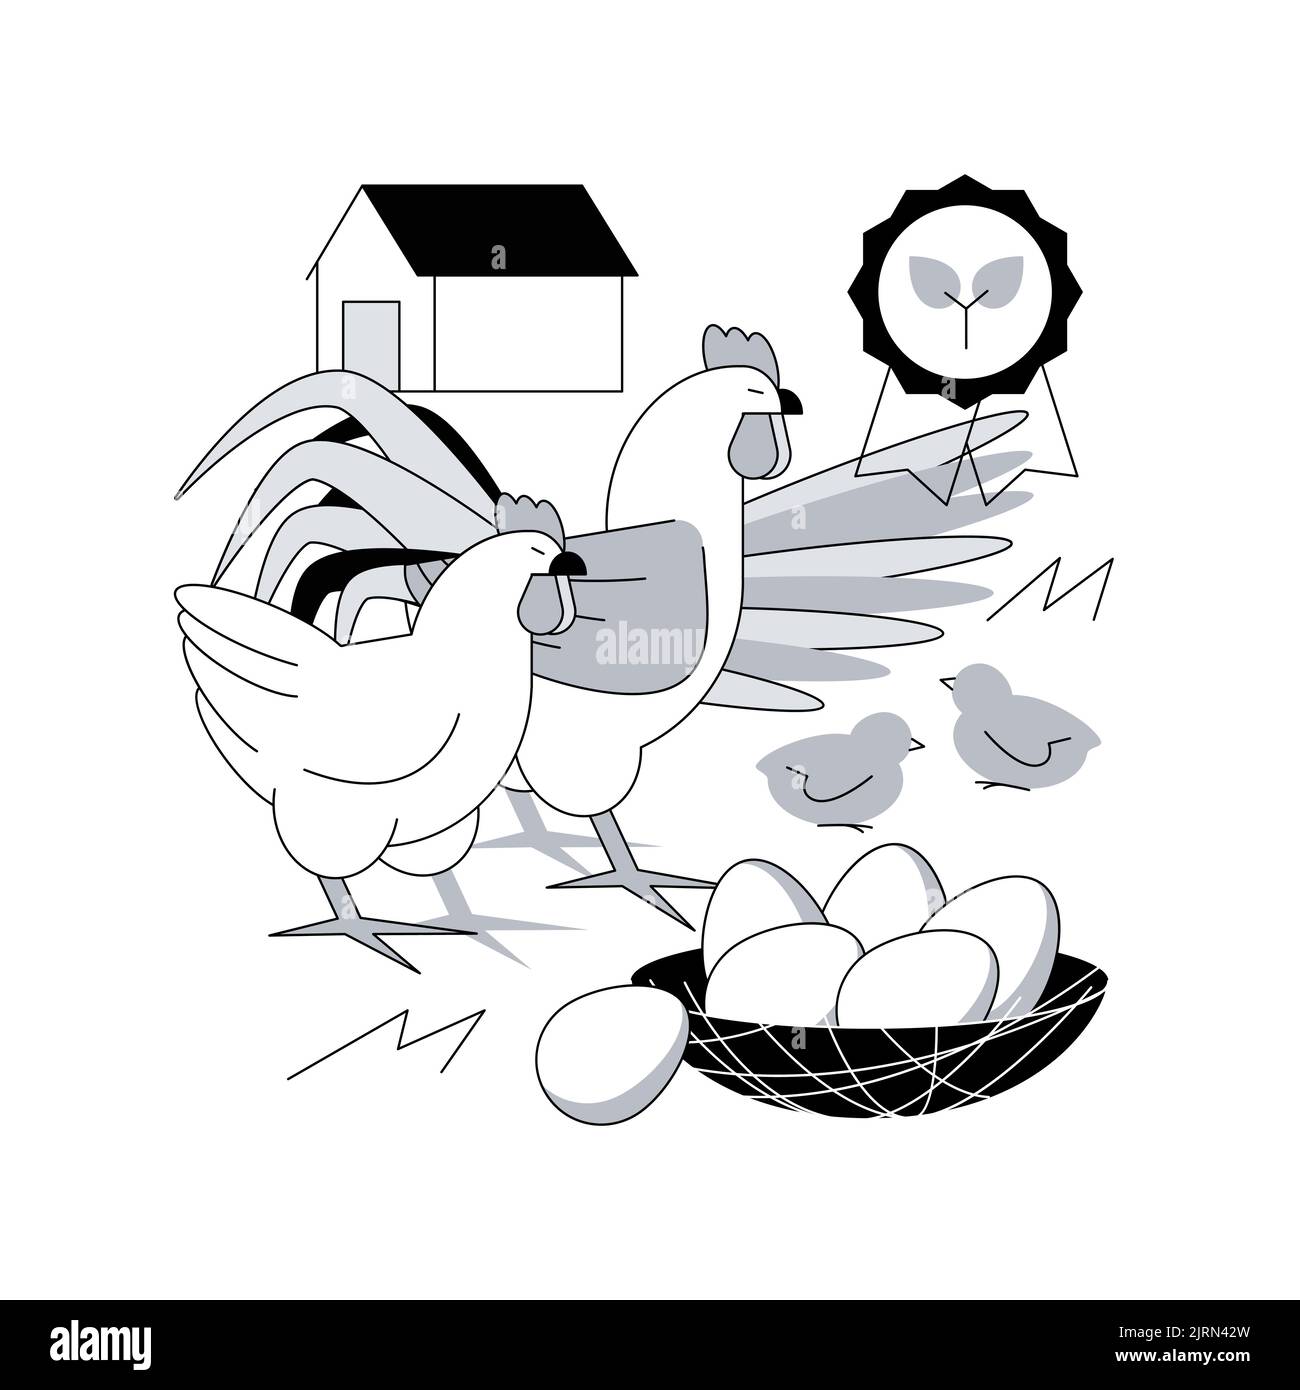 Freilaufiges Huhn und Eier abstraktes Konzept Vektor-Illustration. Käfigfreie Eier, Bio-Lebensmittel, nährstoffreiche Ernährung, glückliche Hühner, Lebensmittelkennzeichnung, Abstrakte Metapher für organische Zertifizierungen. Stock Vektor